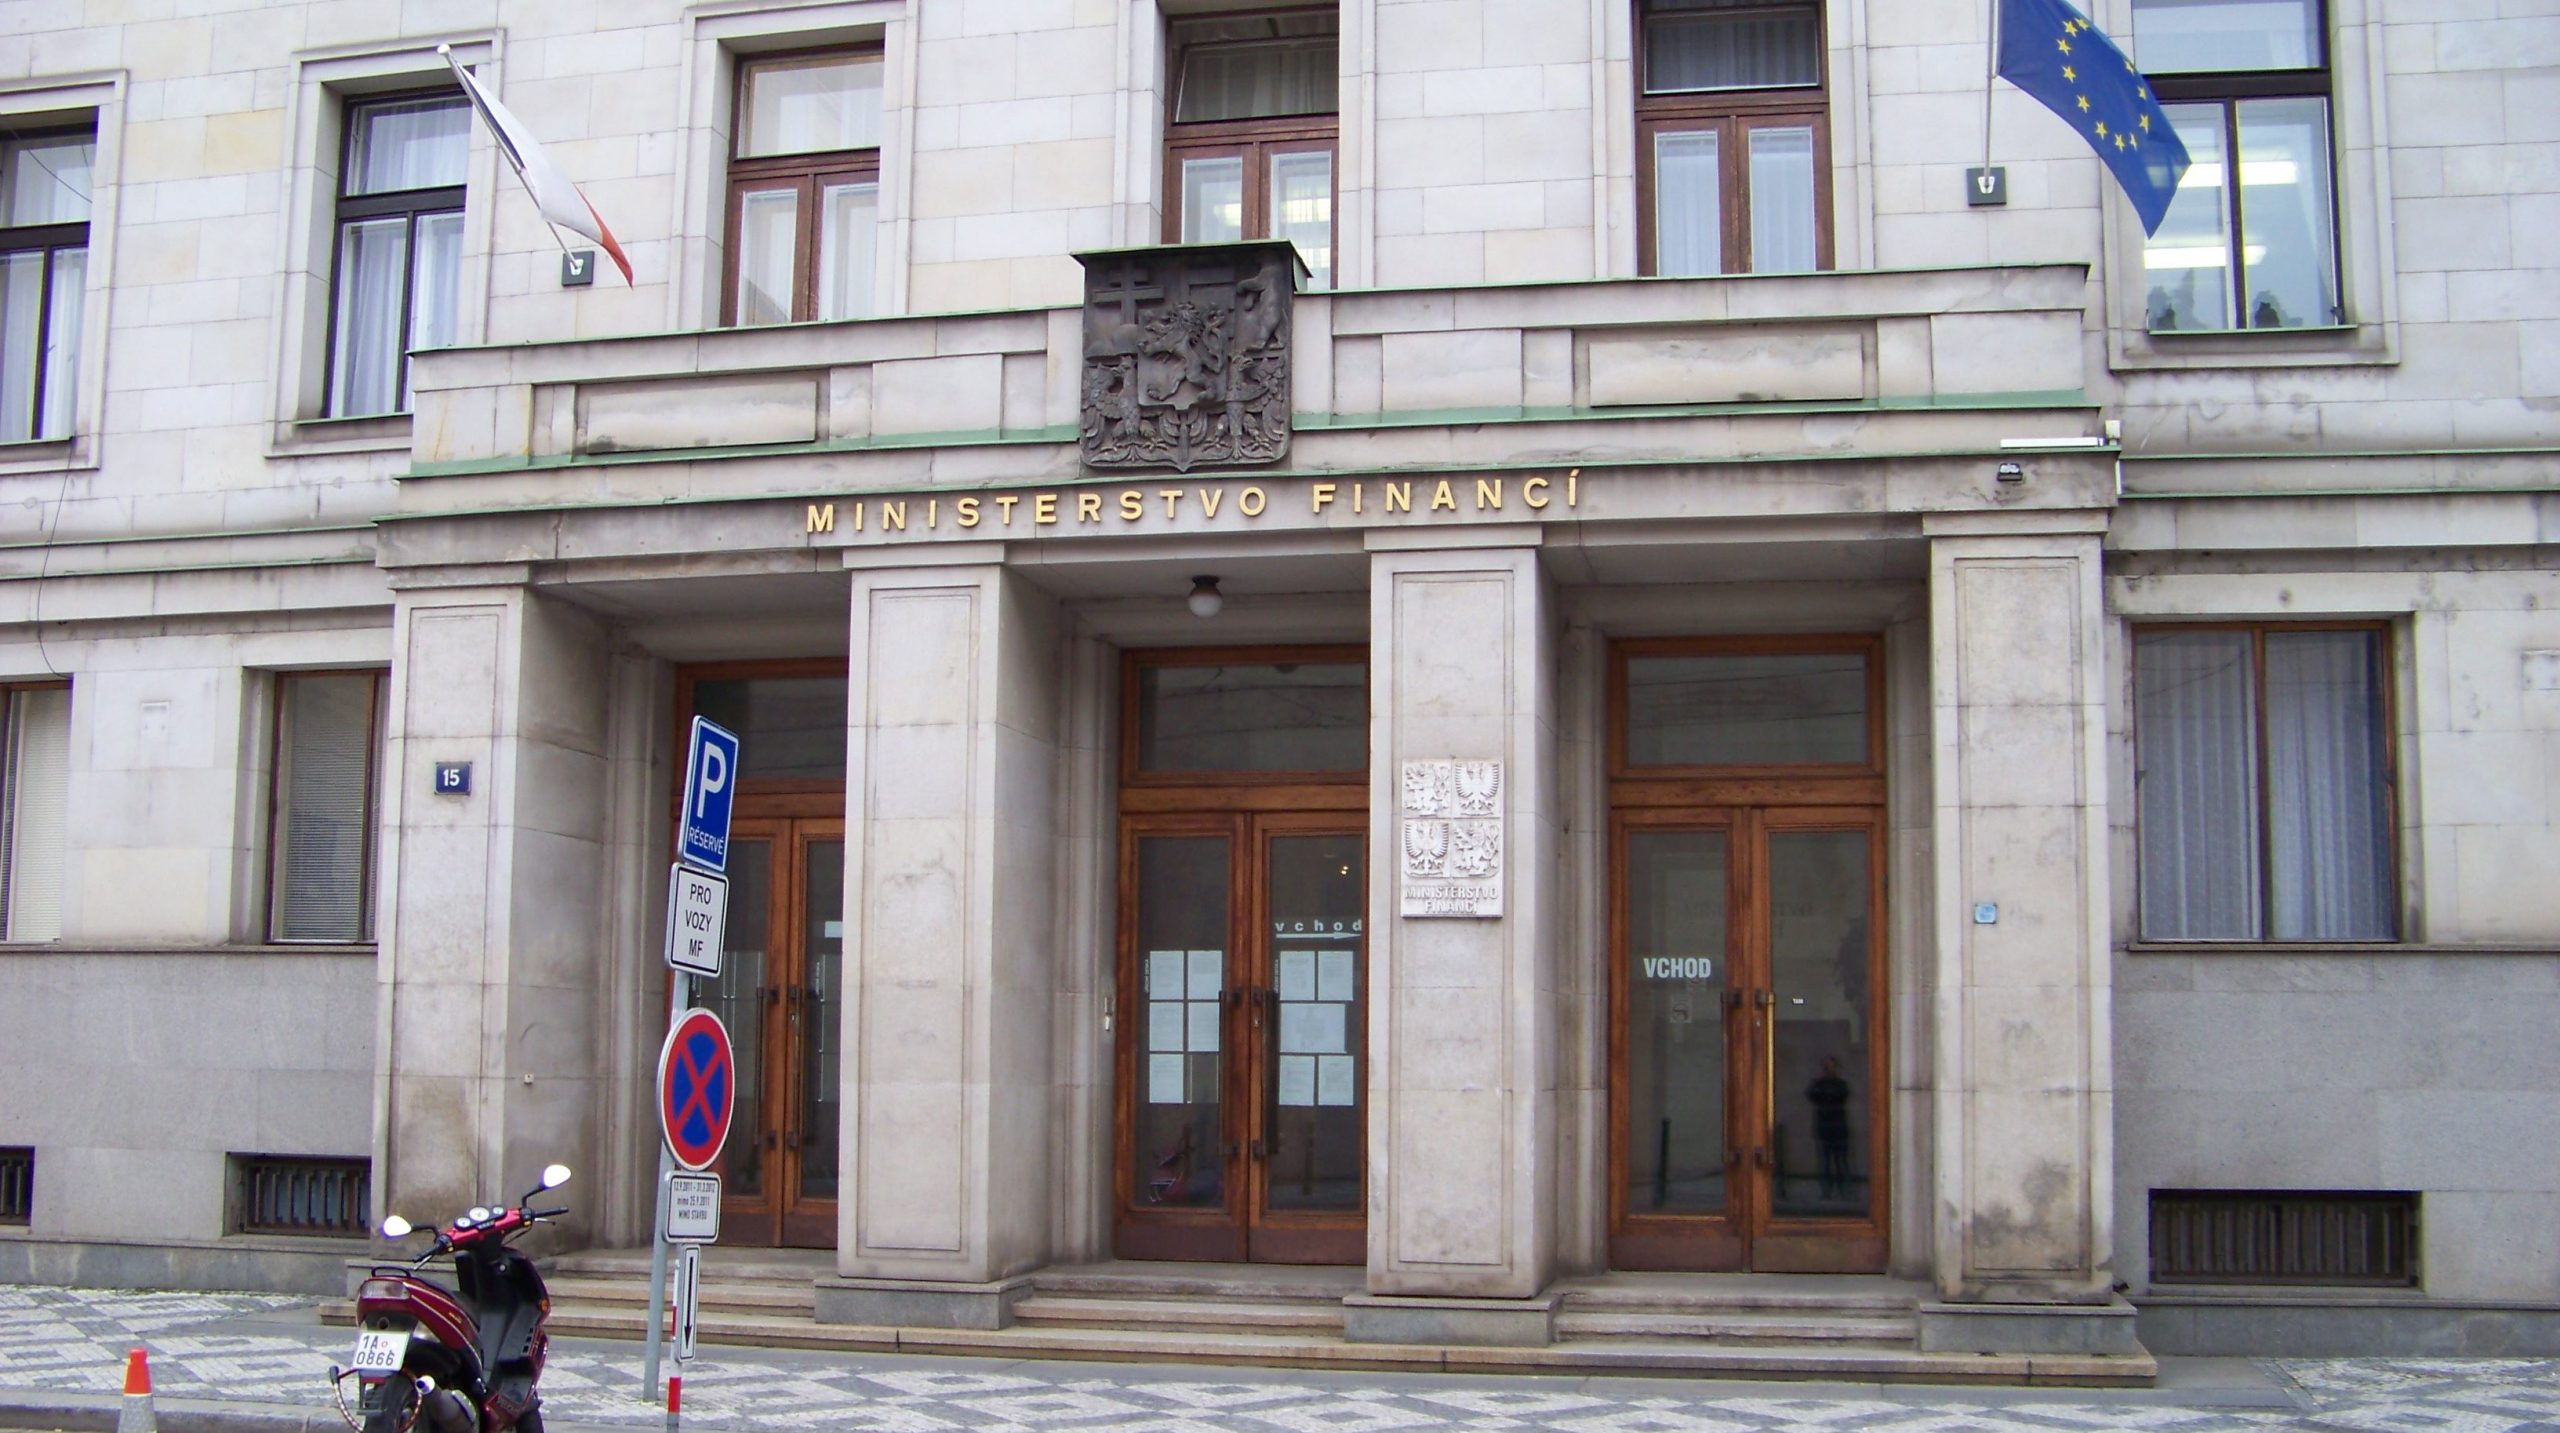 Tschechisches Finanzministerium in Prag|Miroslav Kalousek